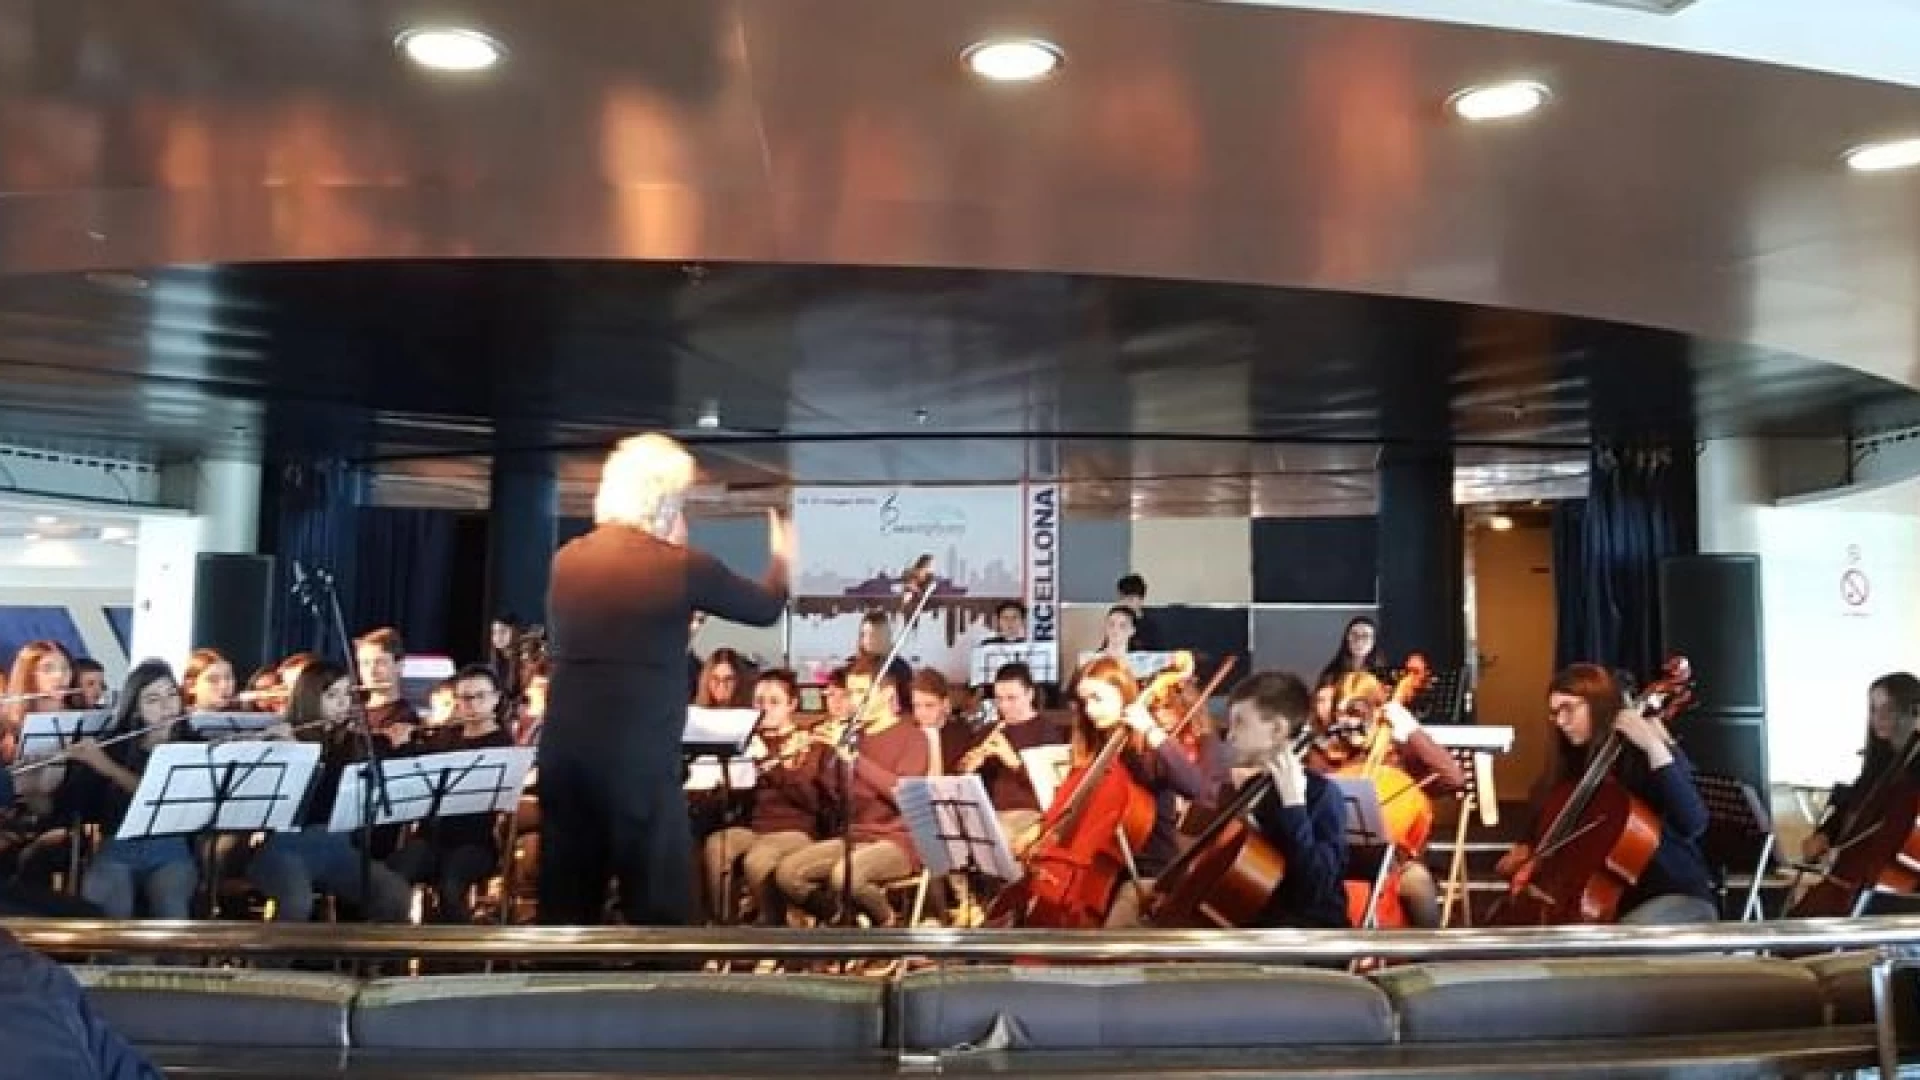 Il 19 maggio concerto e presentazione dell” Orchestra scolastica regionale del Molise”. Appuntamento da non perdere presso l’aula magna dell’Unimol.